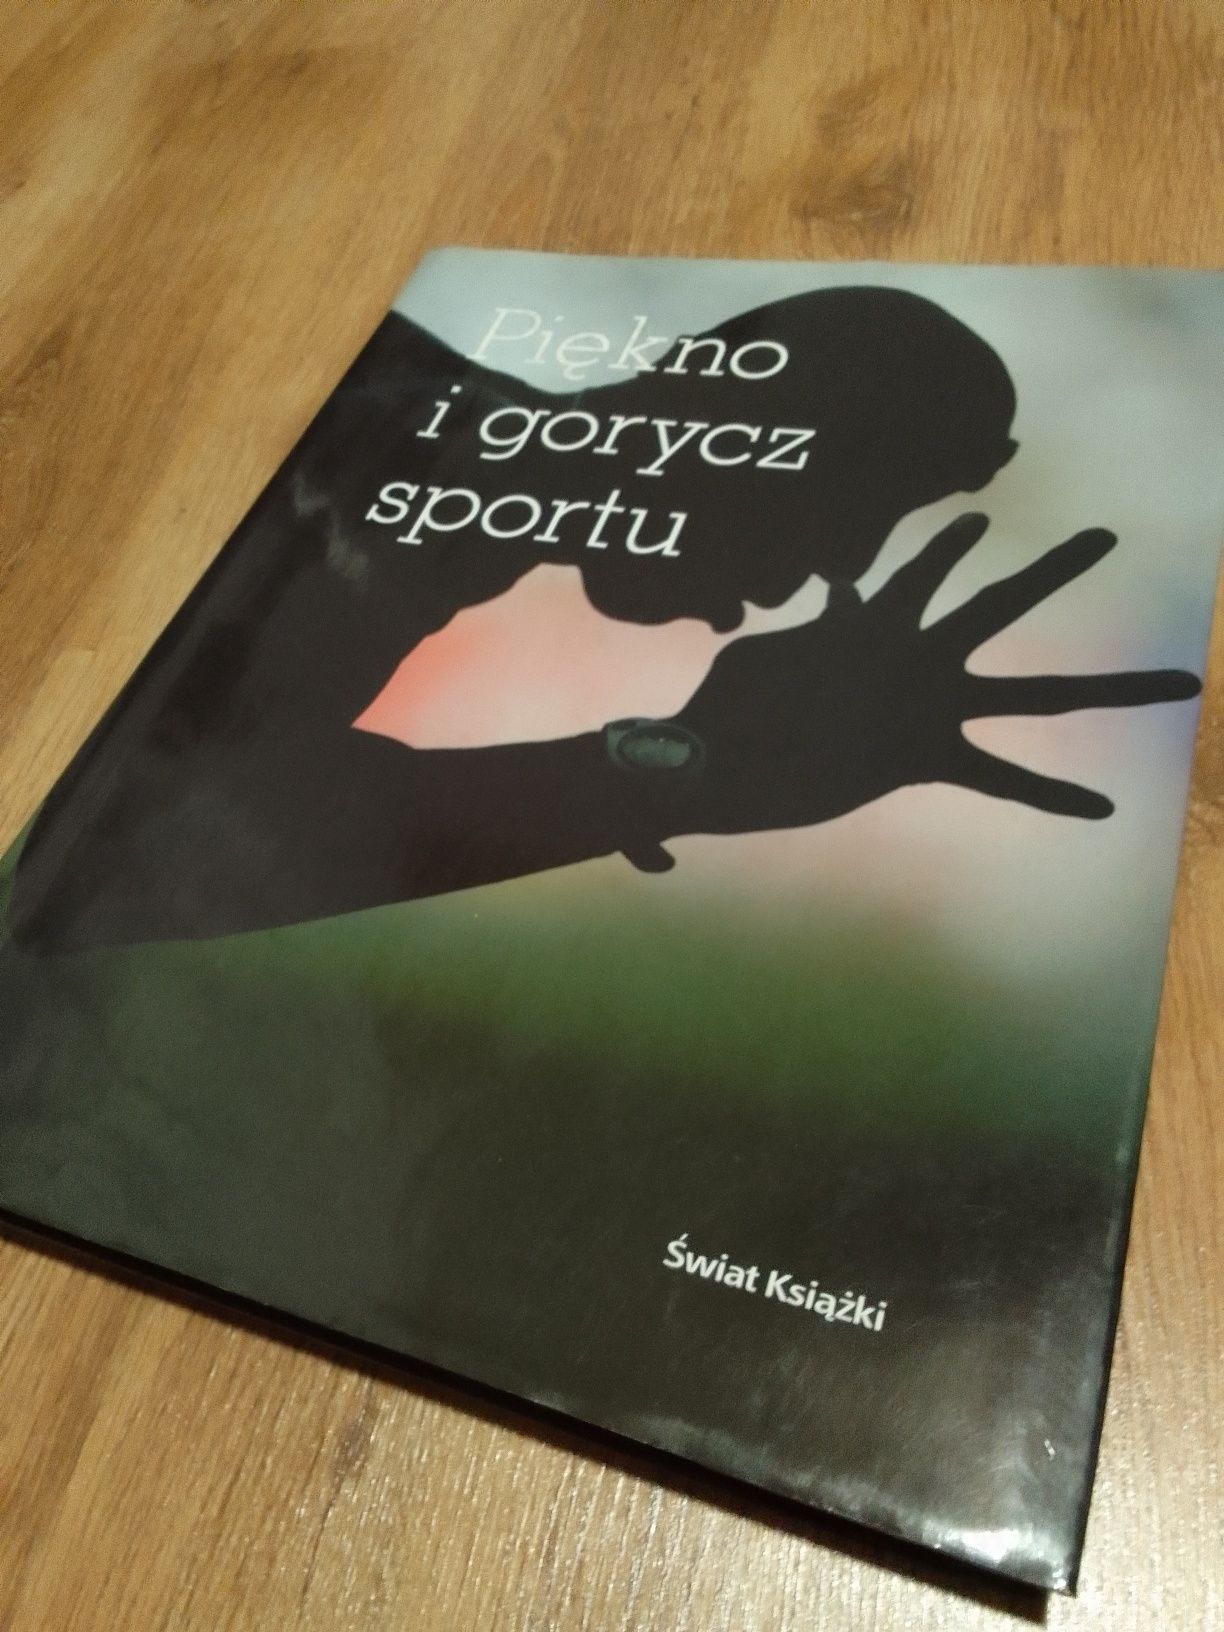 Album książka piękno i gorycz sportu